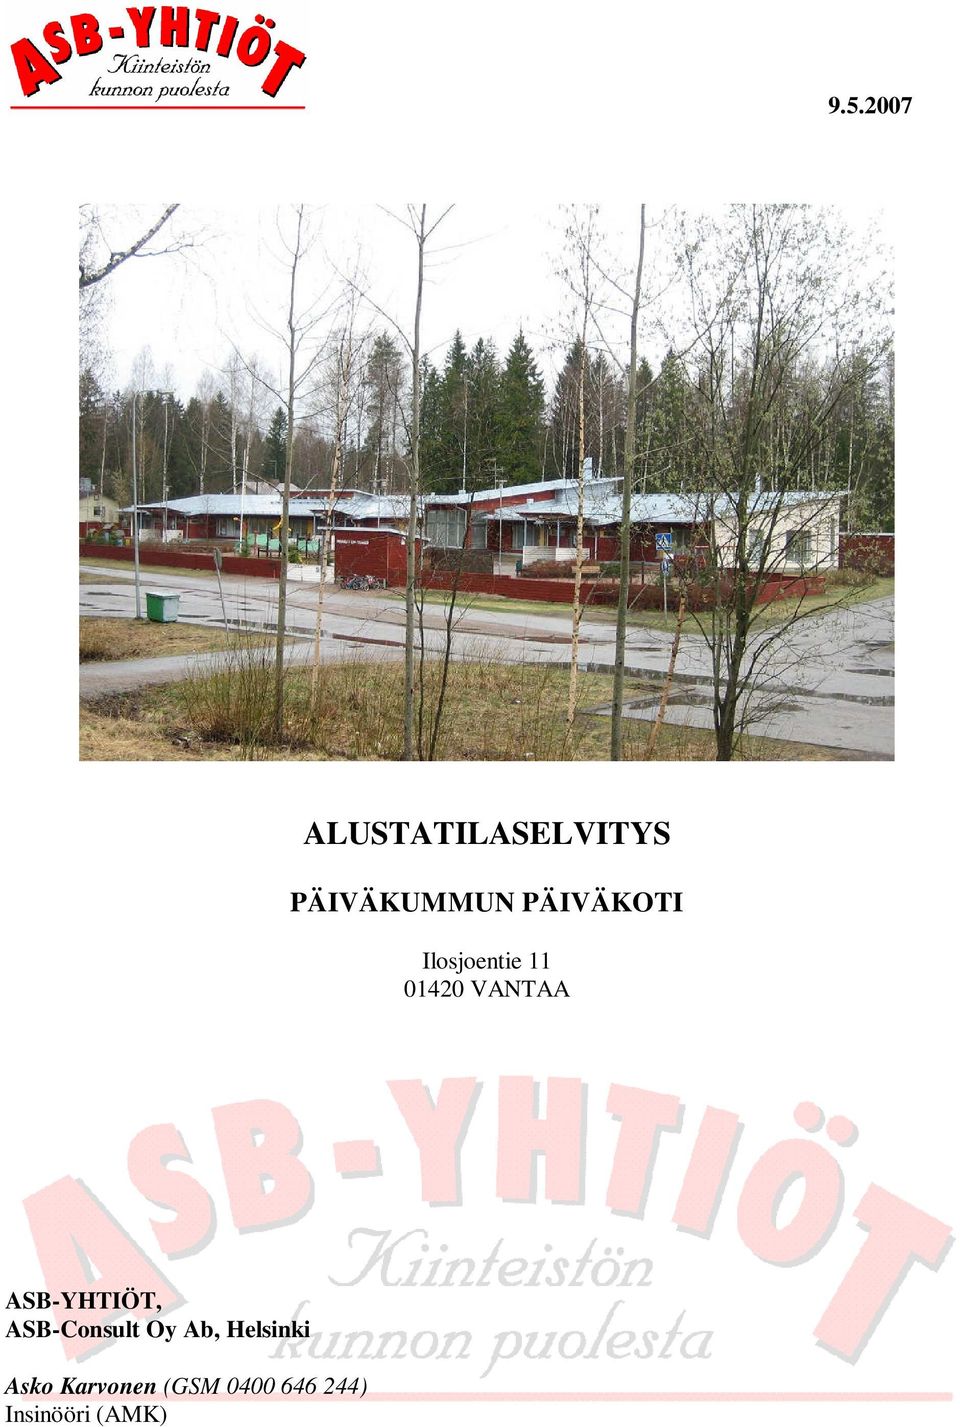 ASB-YHTIÖT, ASB-Consult Oy Ab, Helsinki